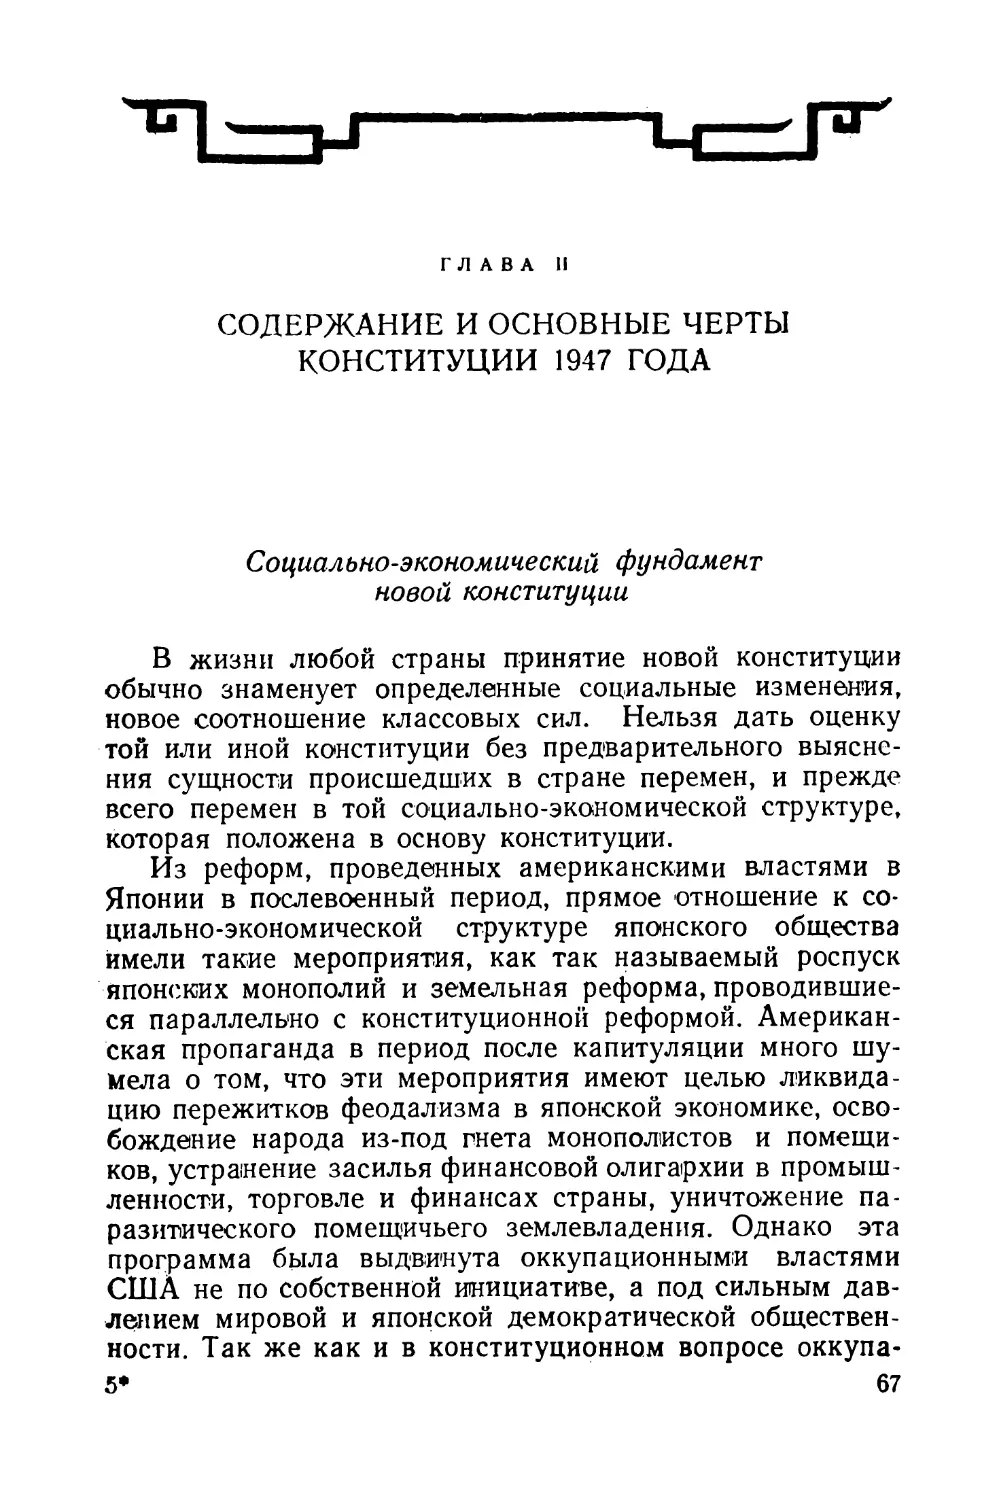 Глава II. Содержание и основные черты конституции 1947 года